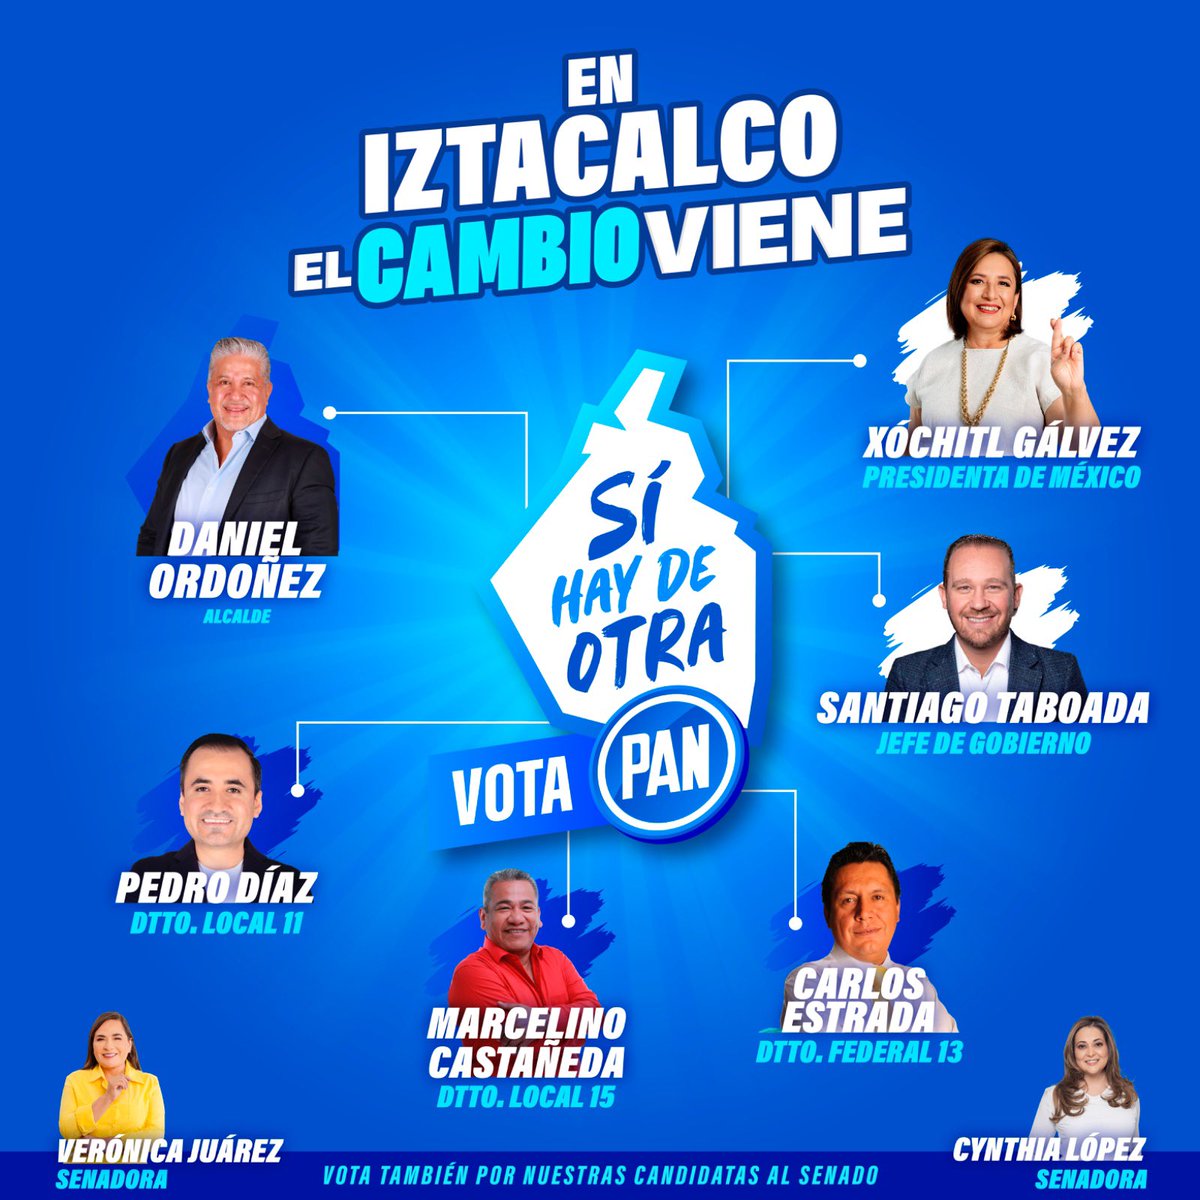 En Iztacalco #ElCambioViene. Conoce a tus candidatas y candidatos y este 2 de junio #VotaPAN en todas las boletas. #SíHayDeOtra #YaSeVan